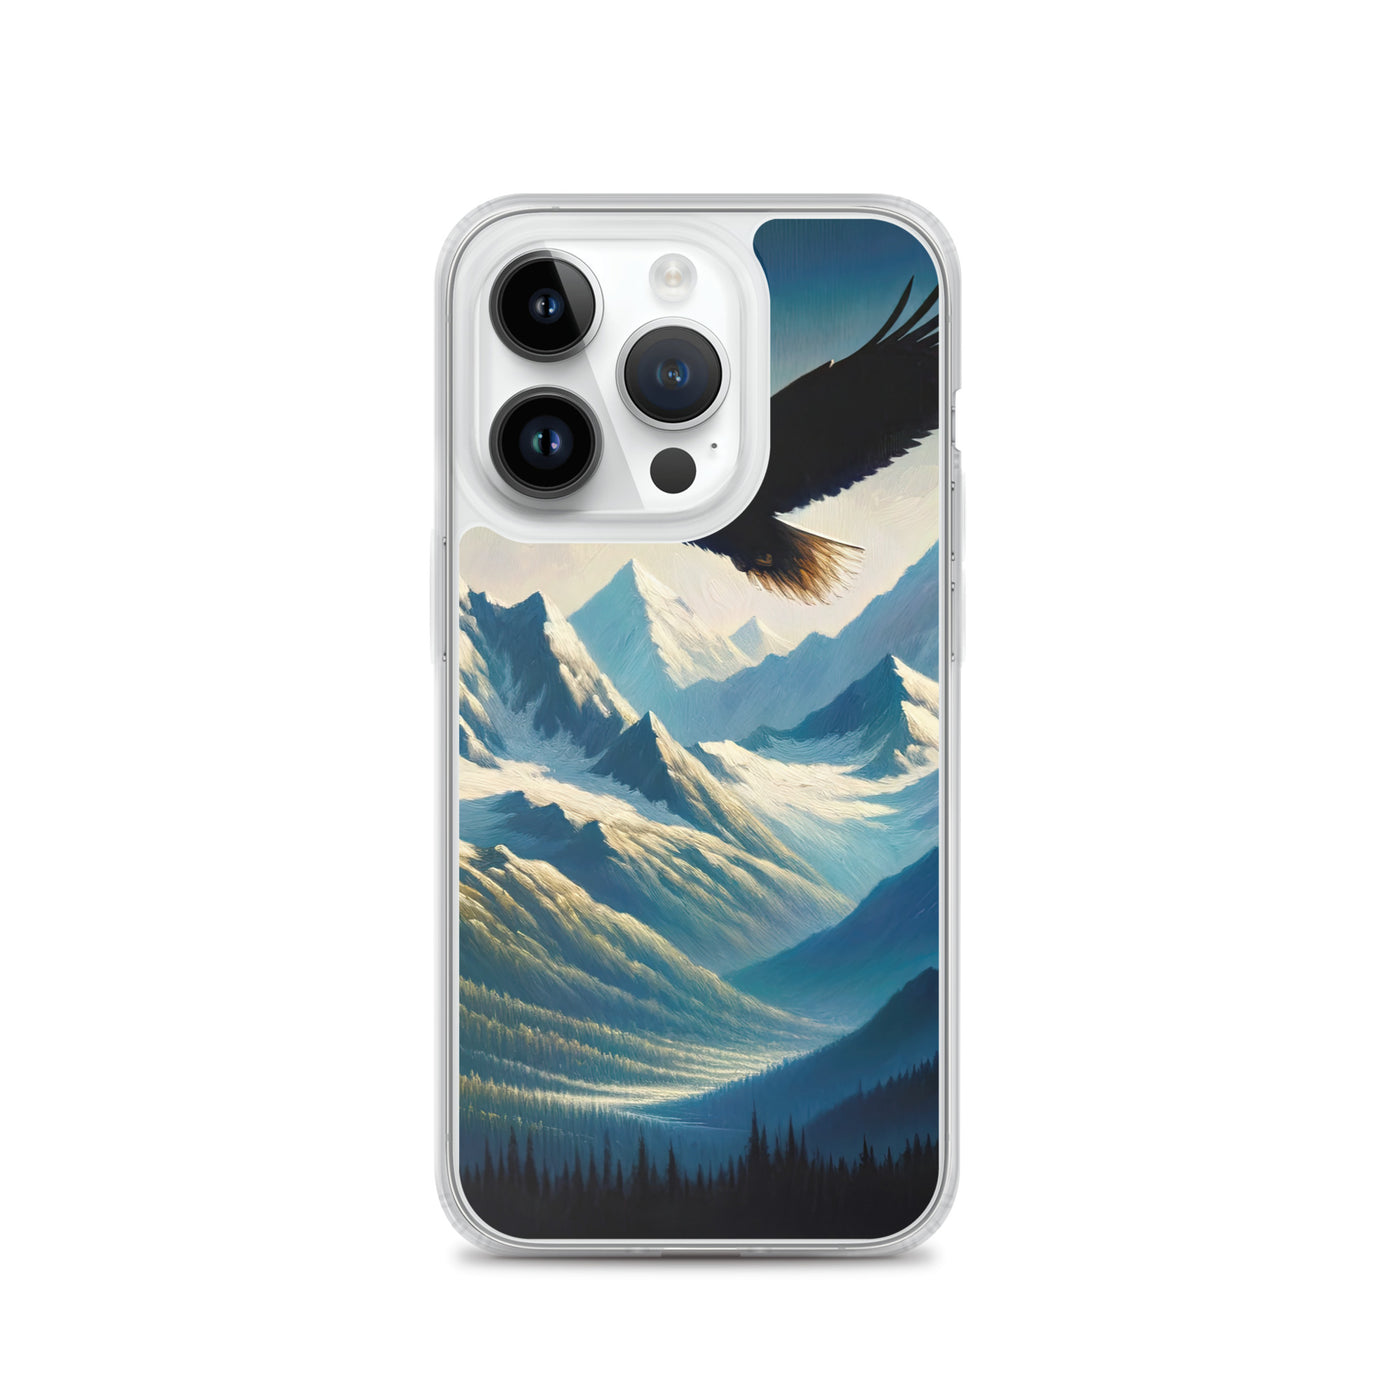 Ölgemälde eines Adlers vor schneebedeckten Bergsilhouetten - iPhone Schutzhülle (durchsichtig) berge xxx yyy zzz iPhone 14 Pro